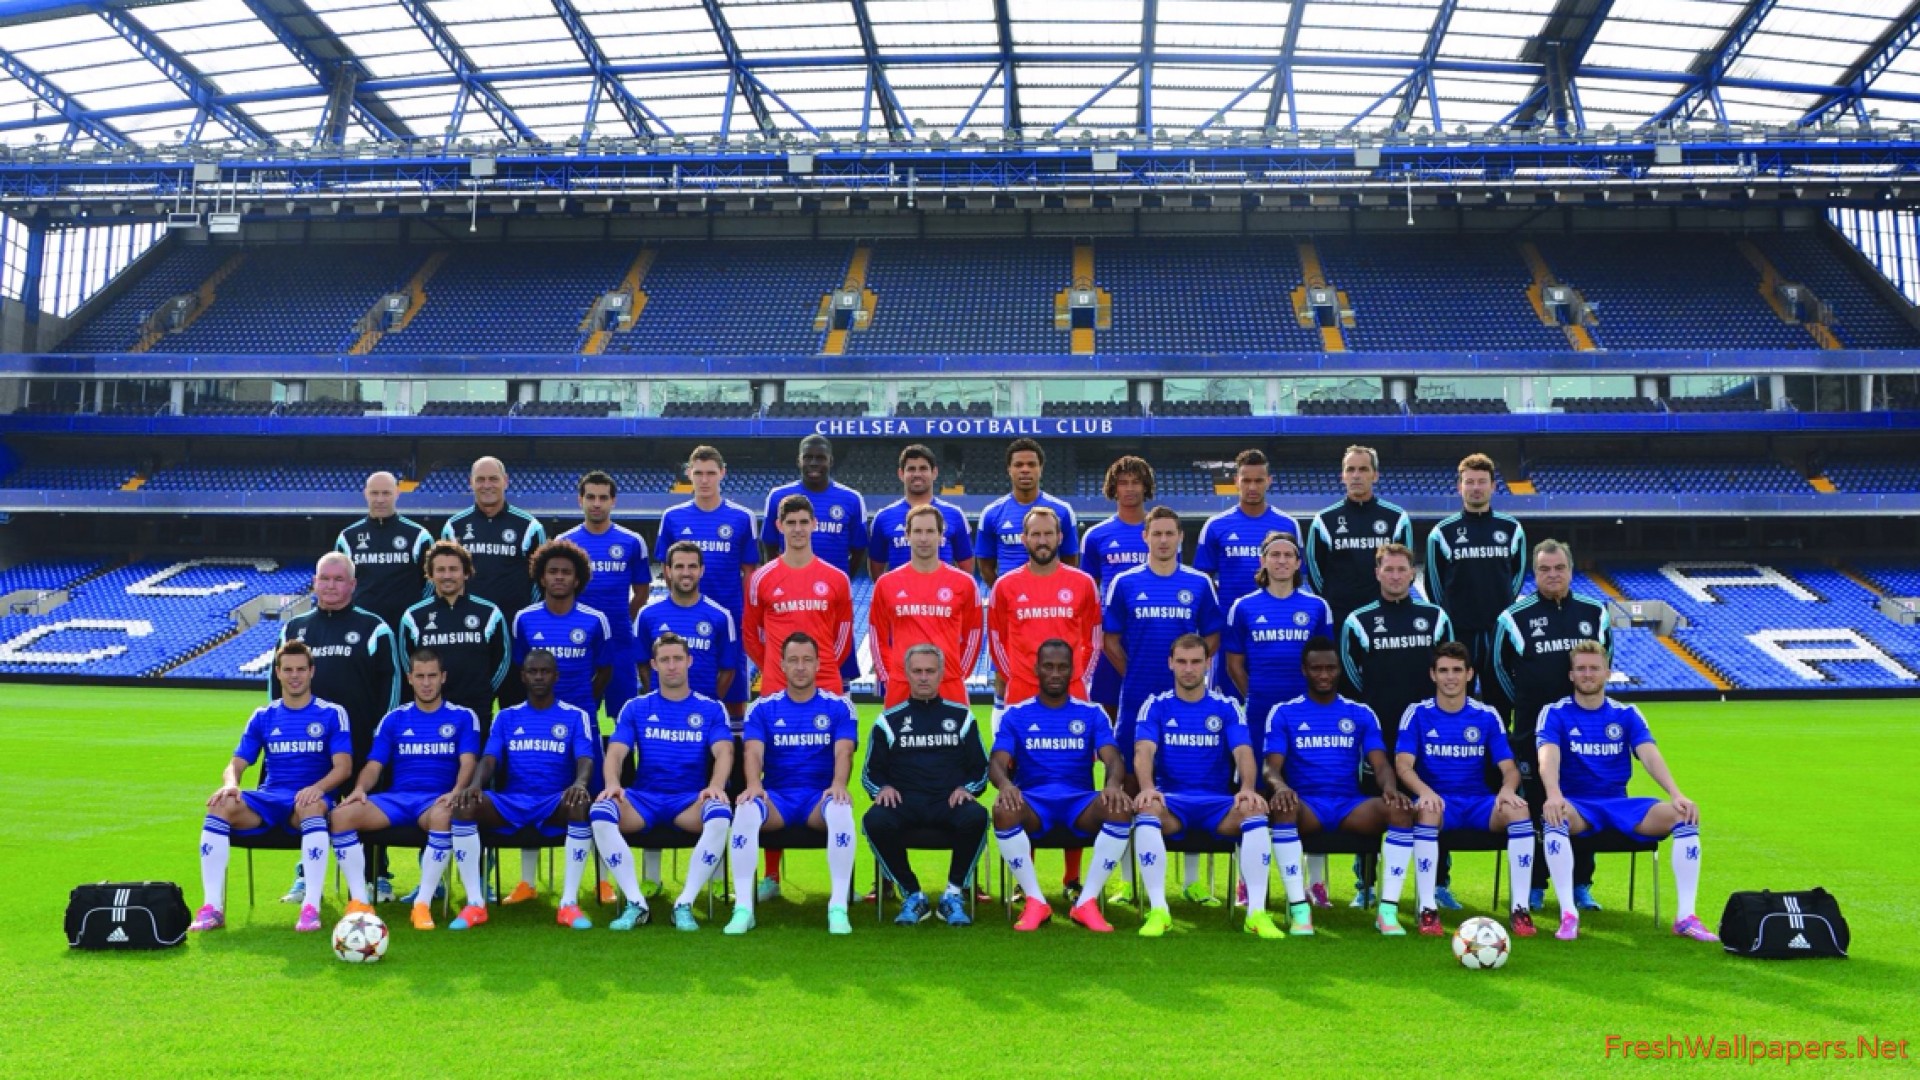 Leicester City Fc Wallpaper Football Pinterest Futebol - 2014 Chelsea Team - HD Wallpaper 